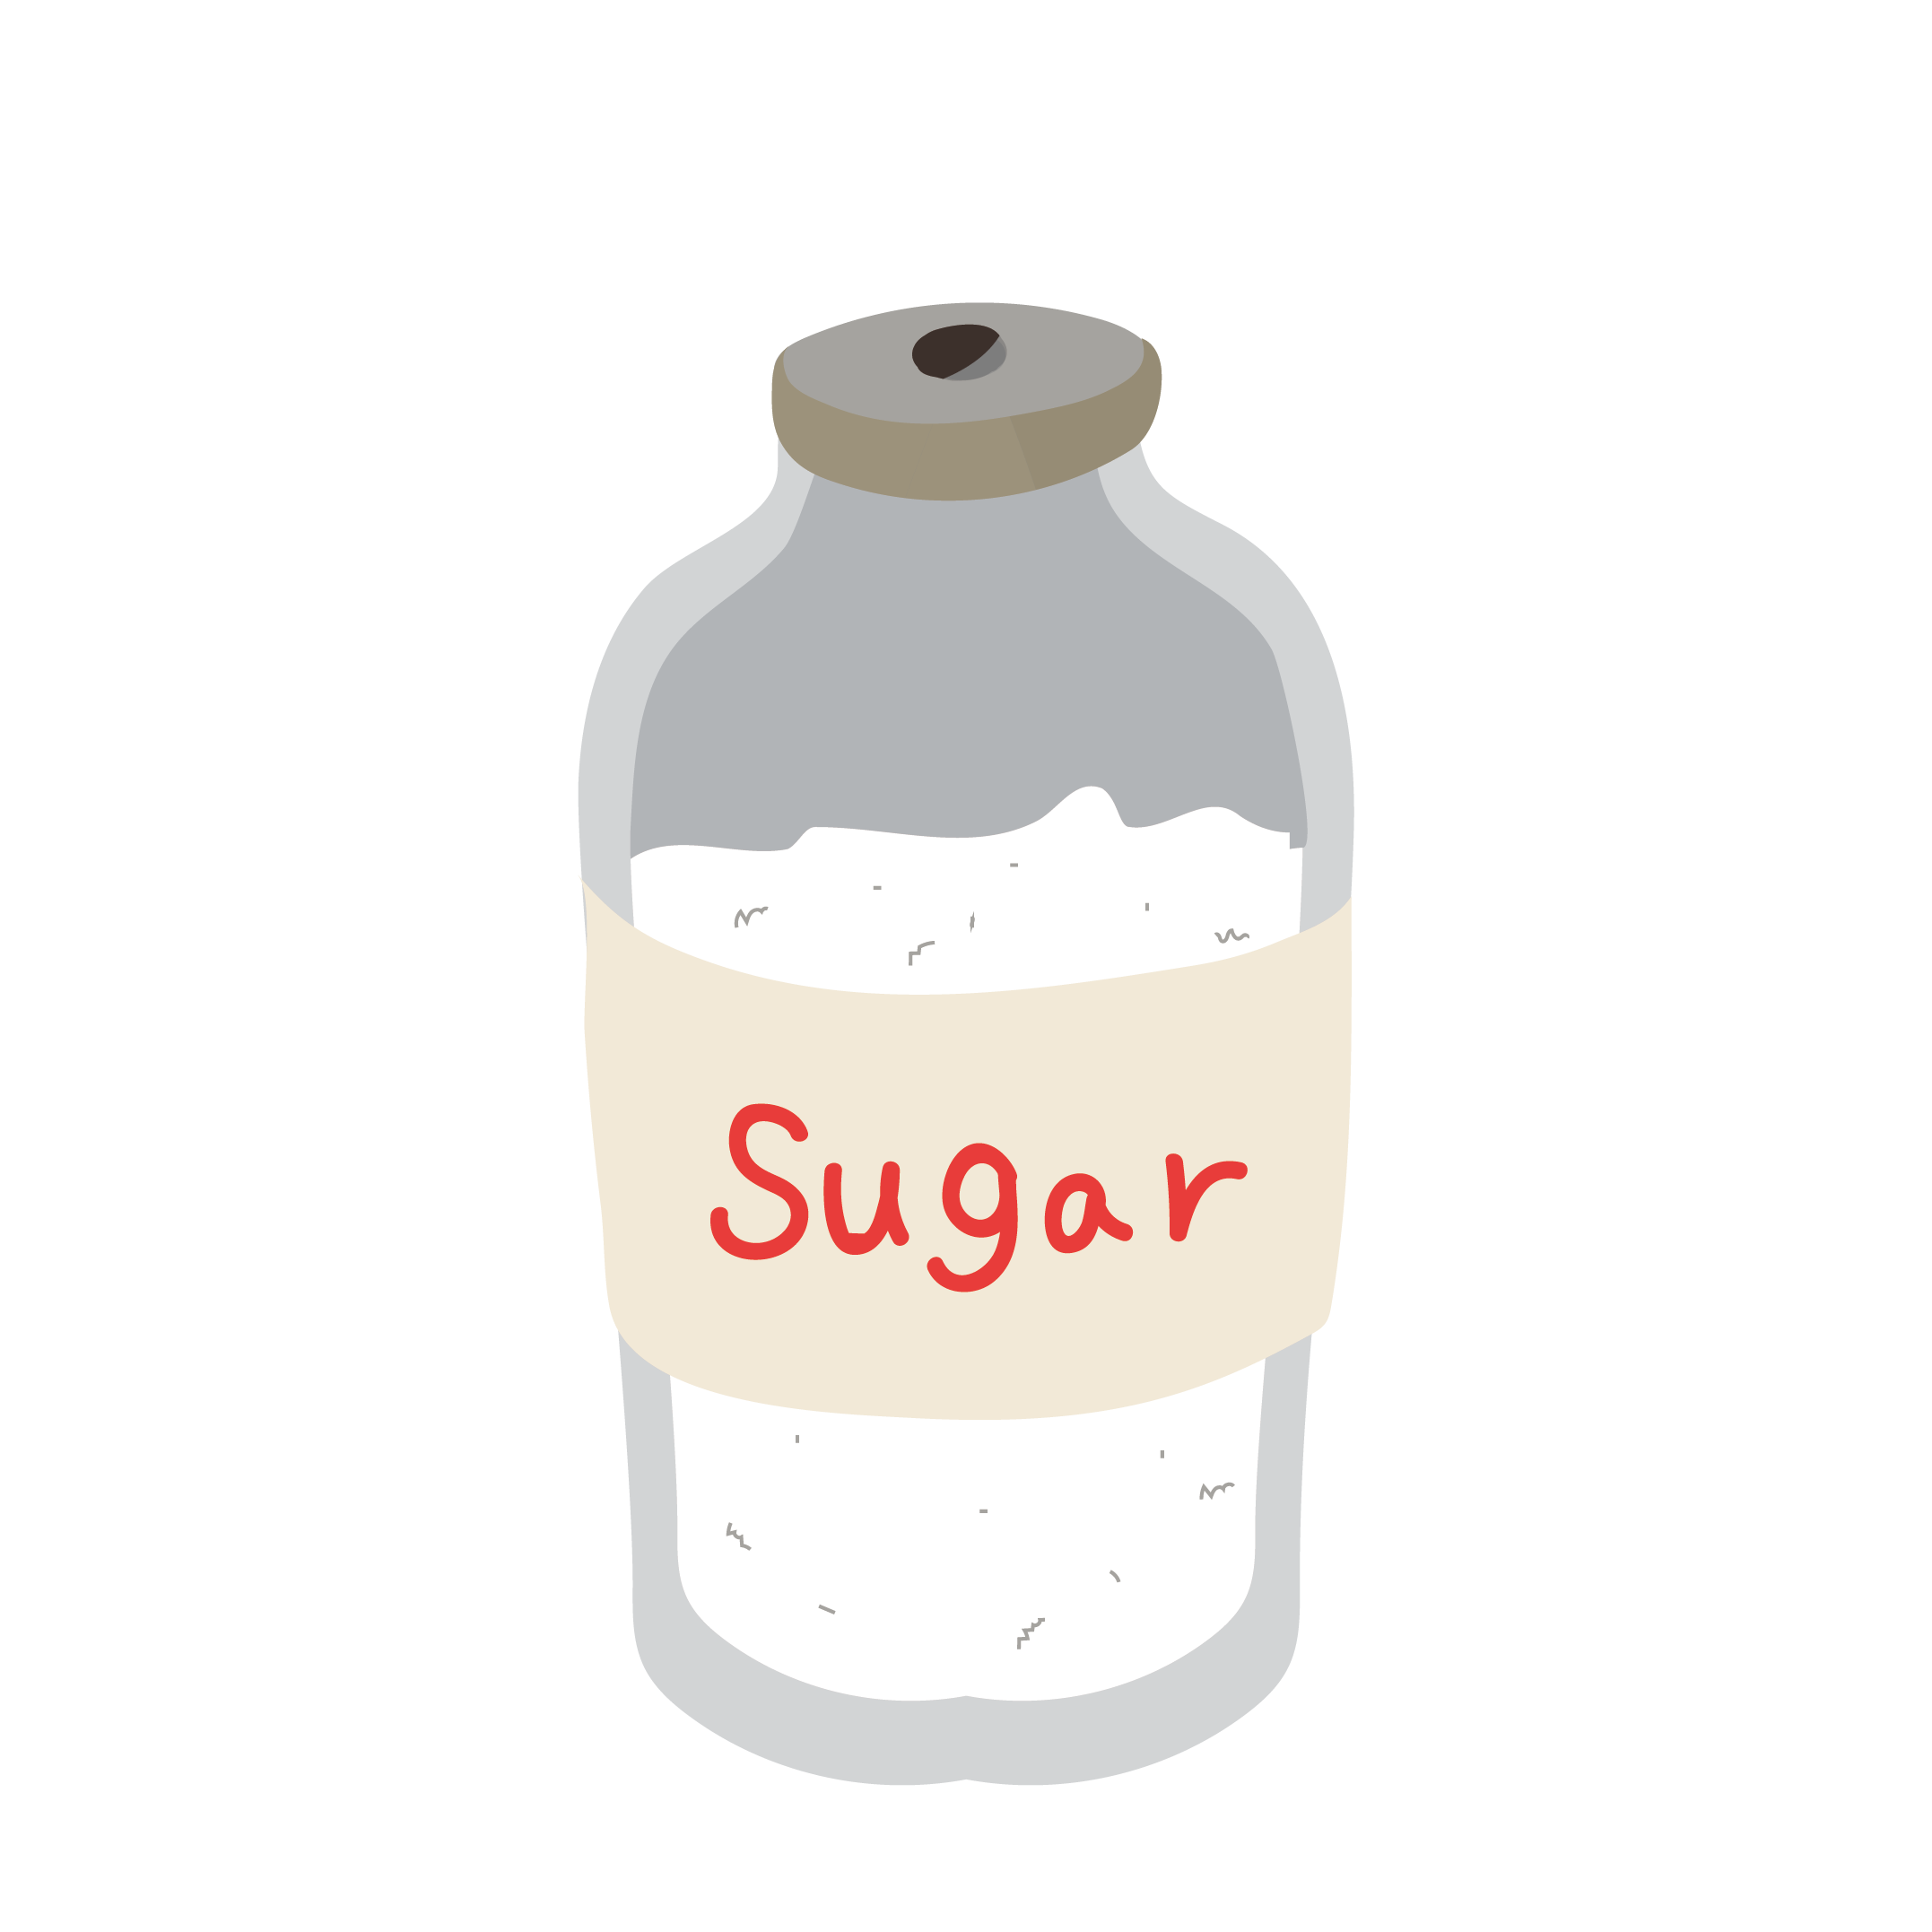 砂糖 さとう シュガー のイラスト レシピなどに 商用フリー 無料 のイラスト素材なら イラストマンション